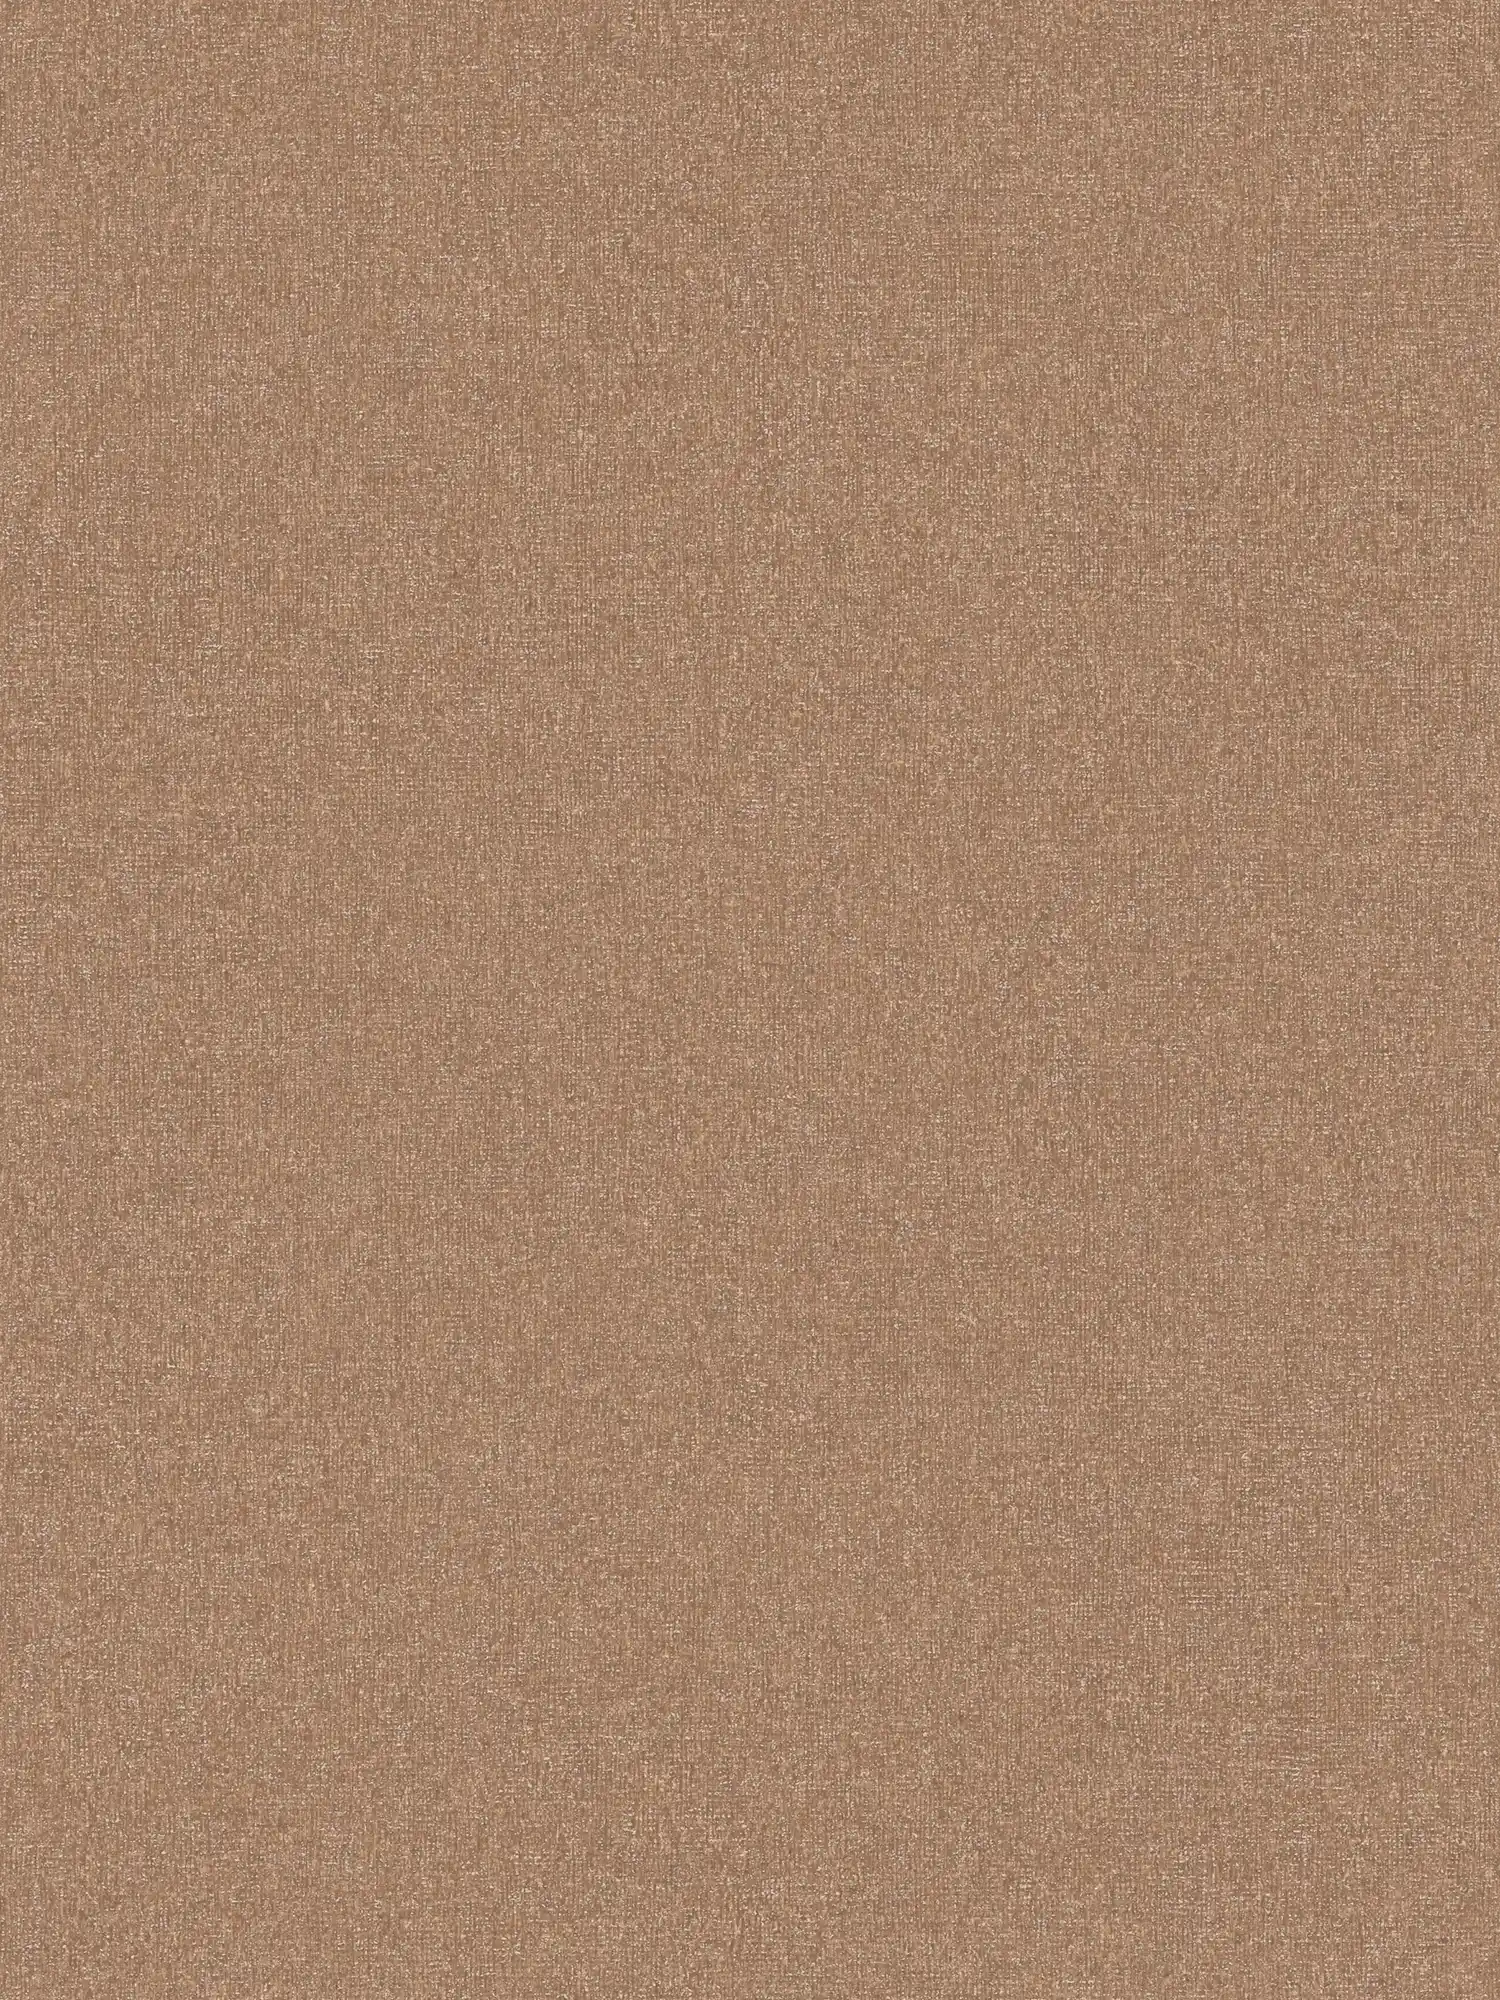 Papel pintado no tejido liso con estructura fina - marrón
